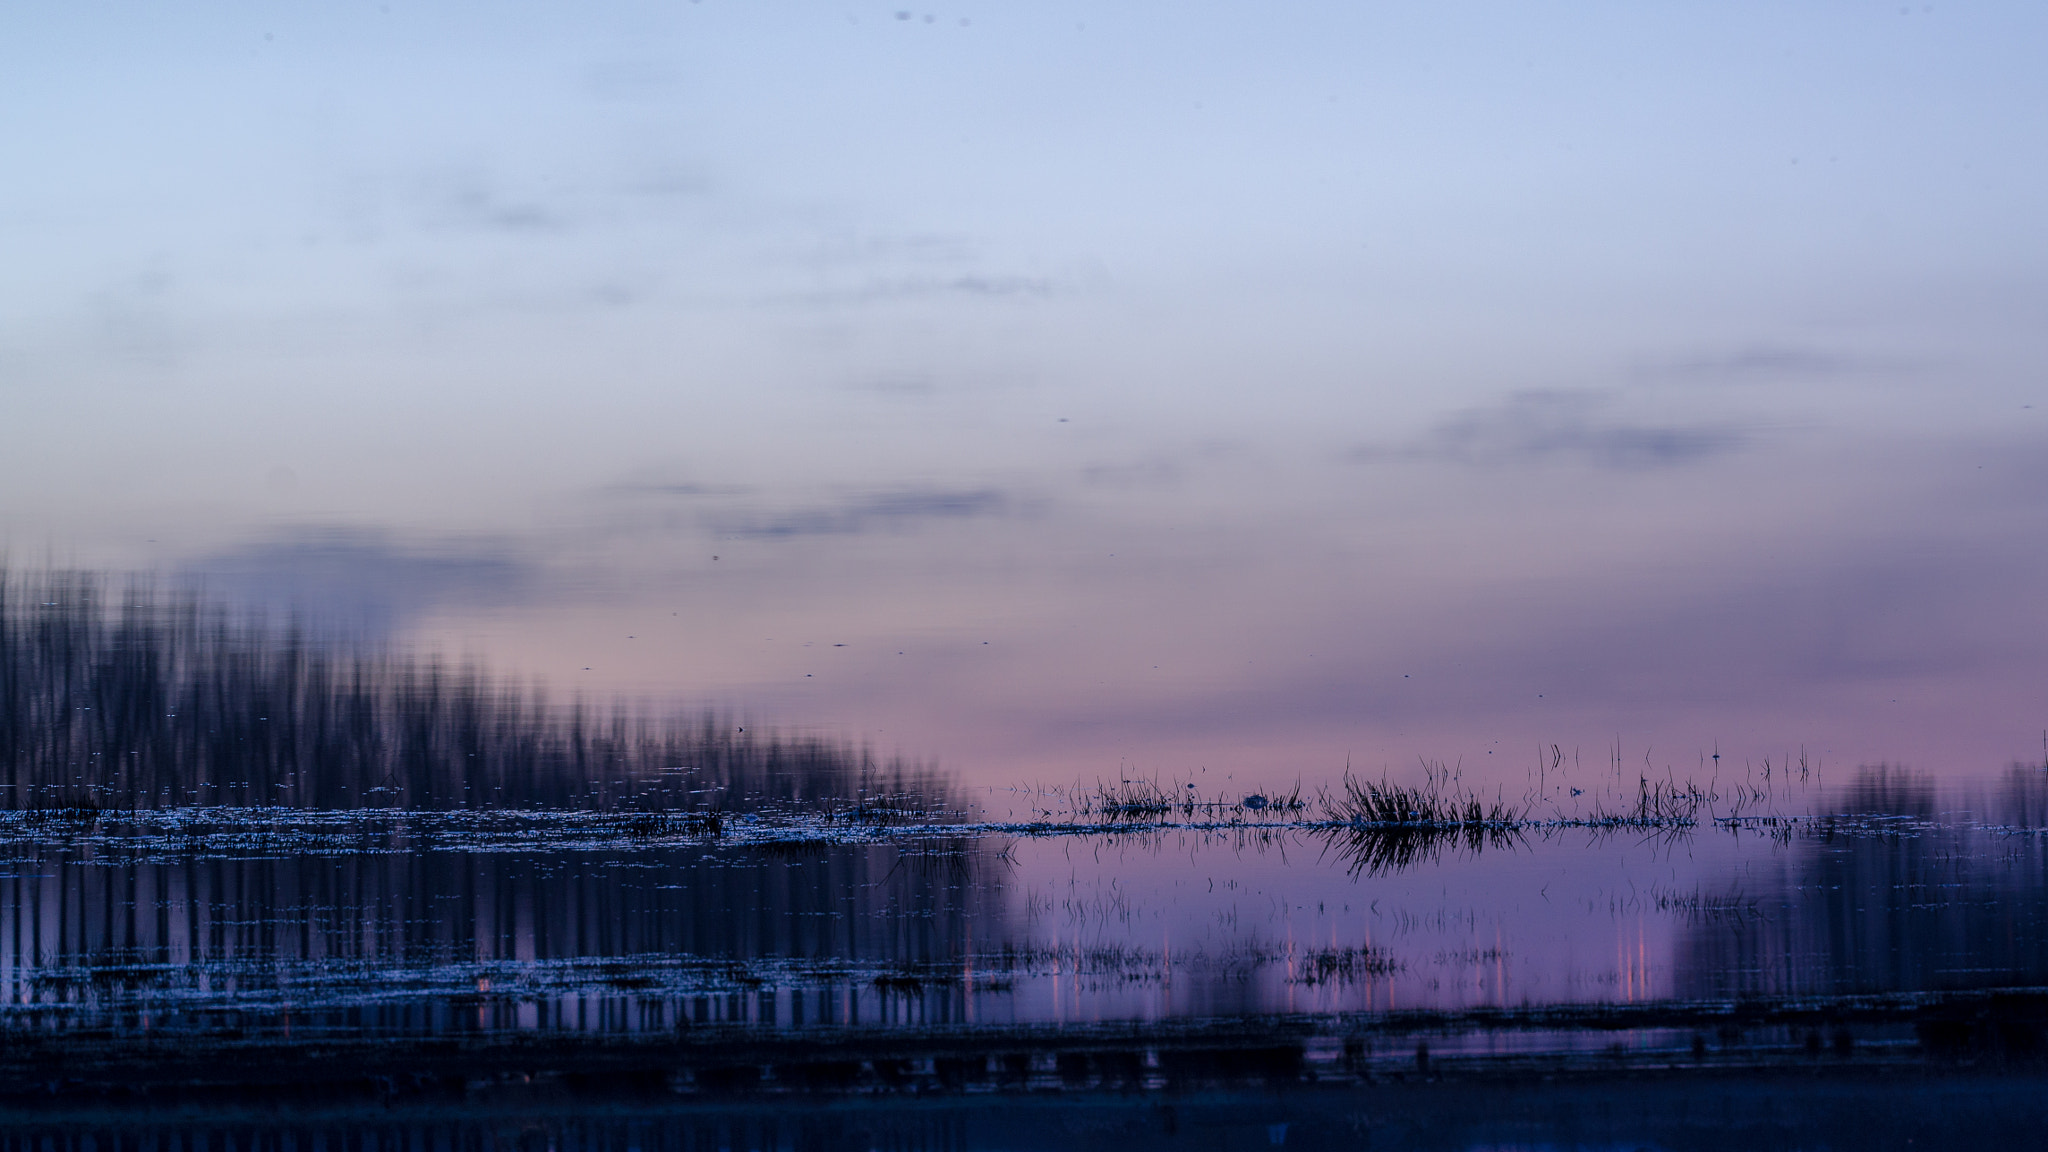 Pentax K-5 sample photo. Reflection of sunrise photography